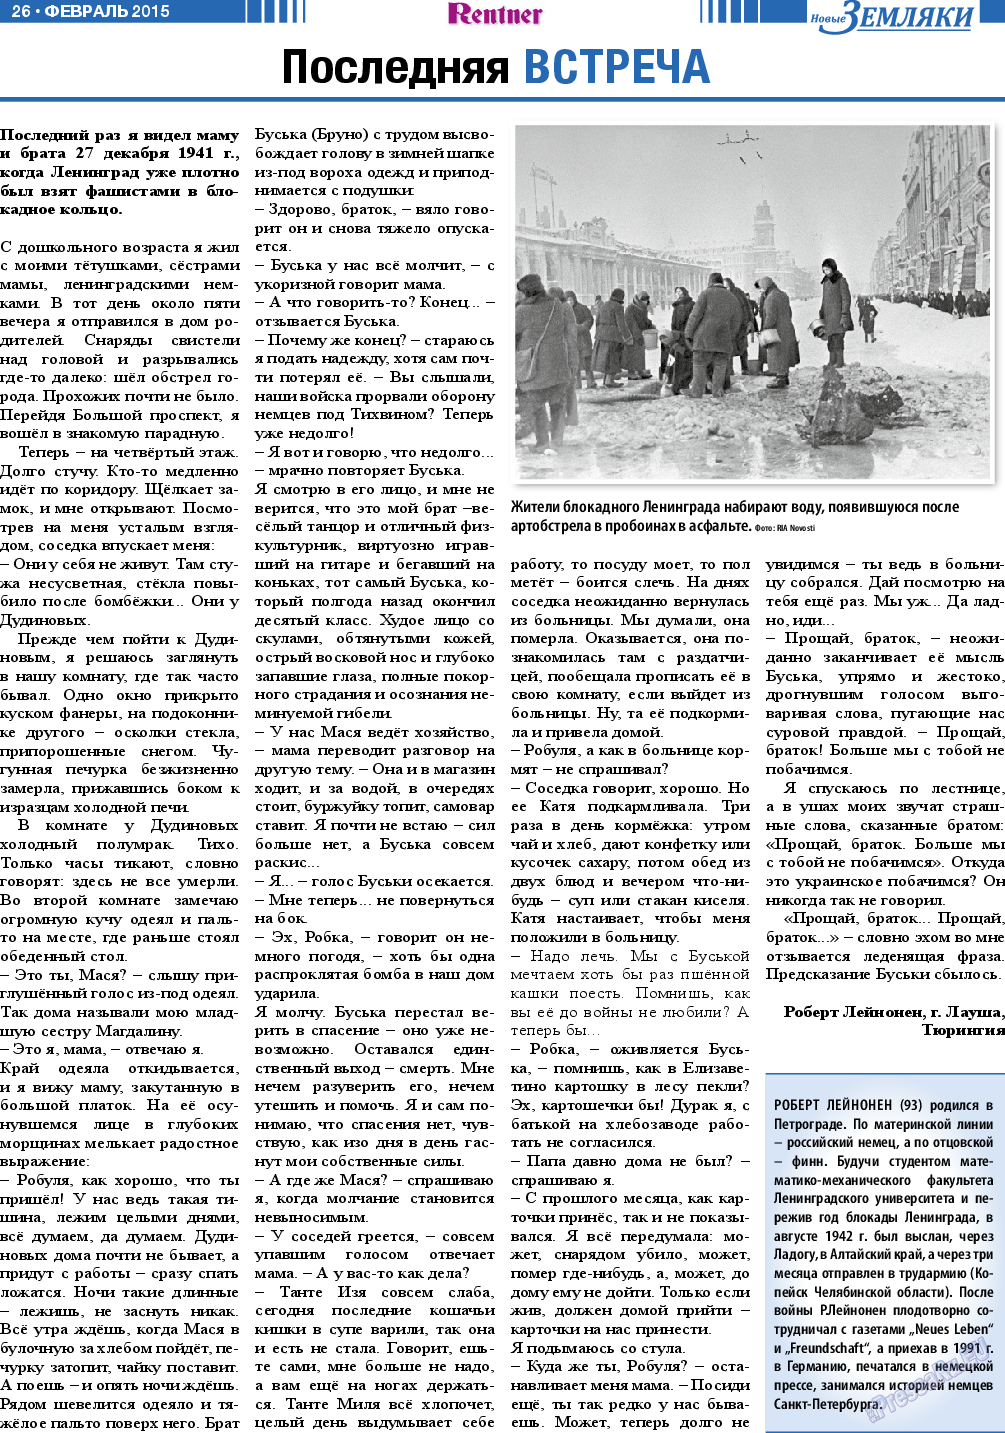 Новые Земляки, газета. 2015 №2 стр.26